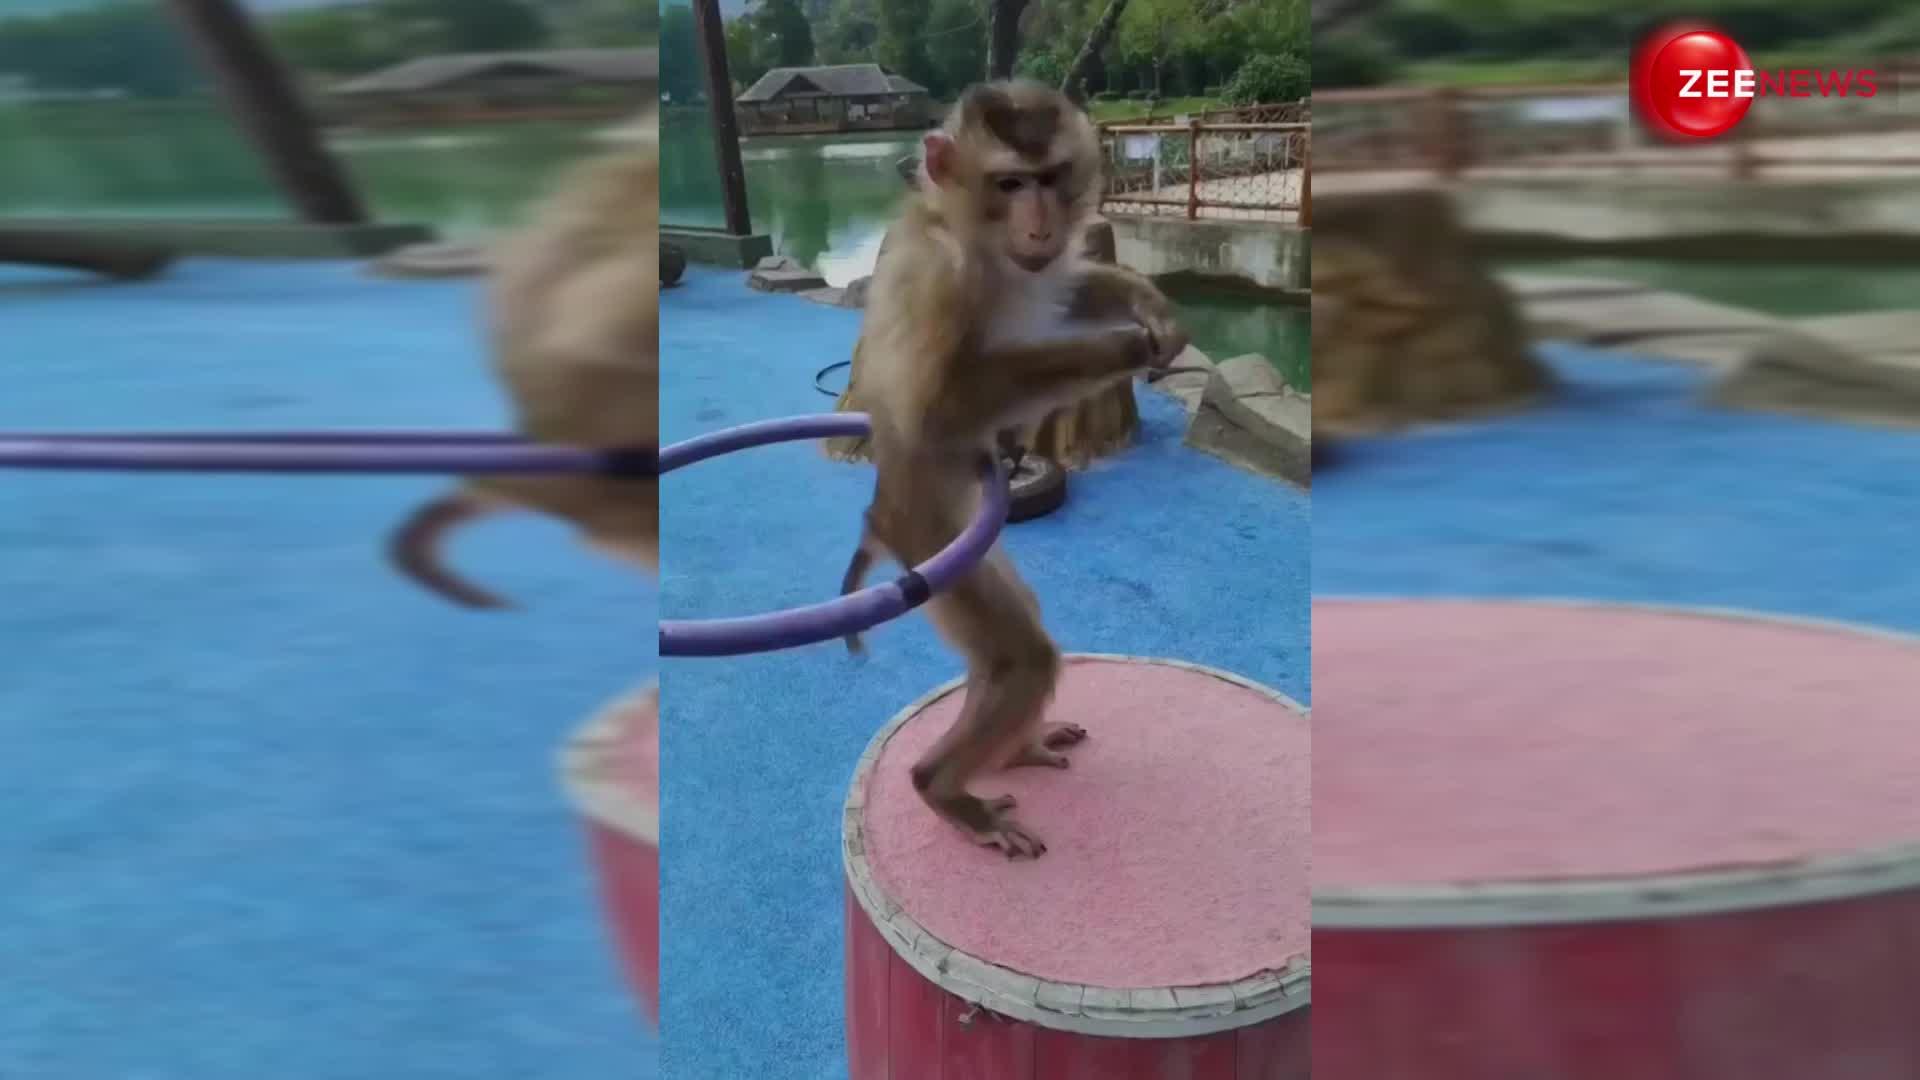 बंदर का टैलेंट देख लोगों को लगा झटका, सबके सामने क्या रिंग डांस; देखें ये वीडियो